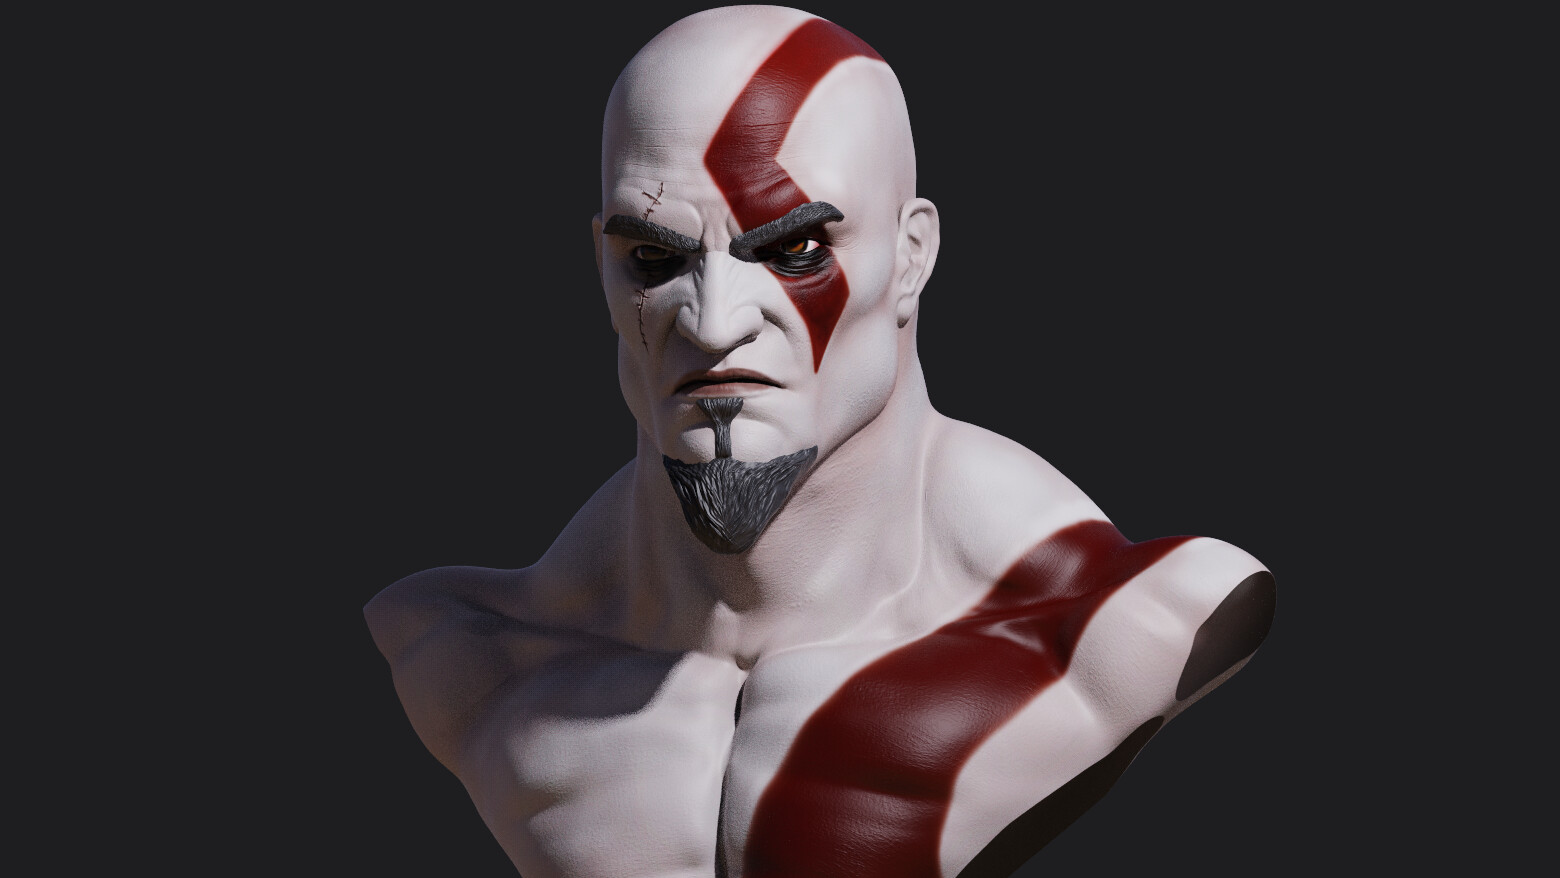 Pin on Kratos